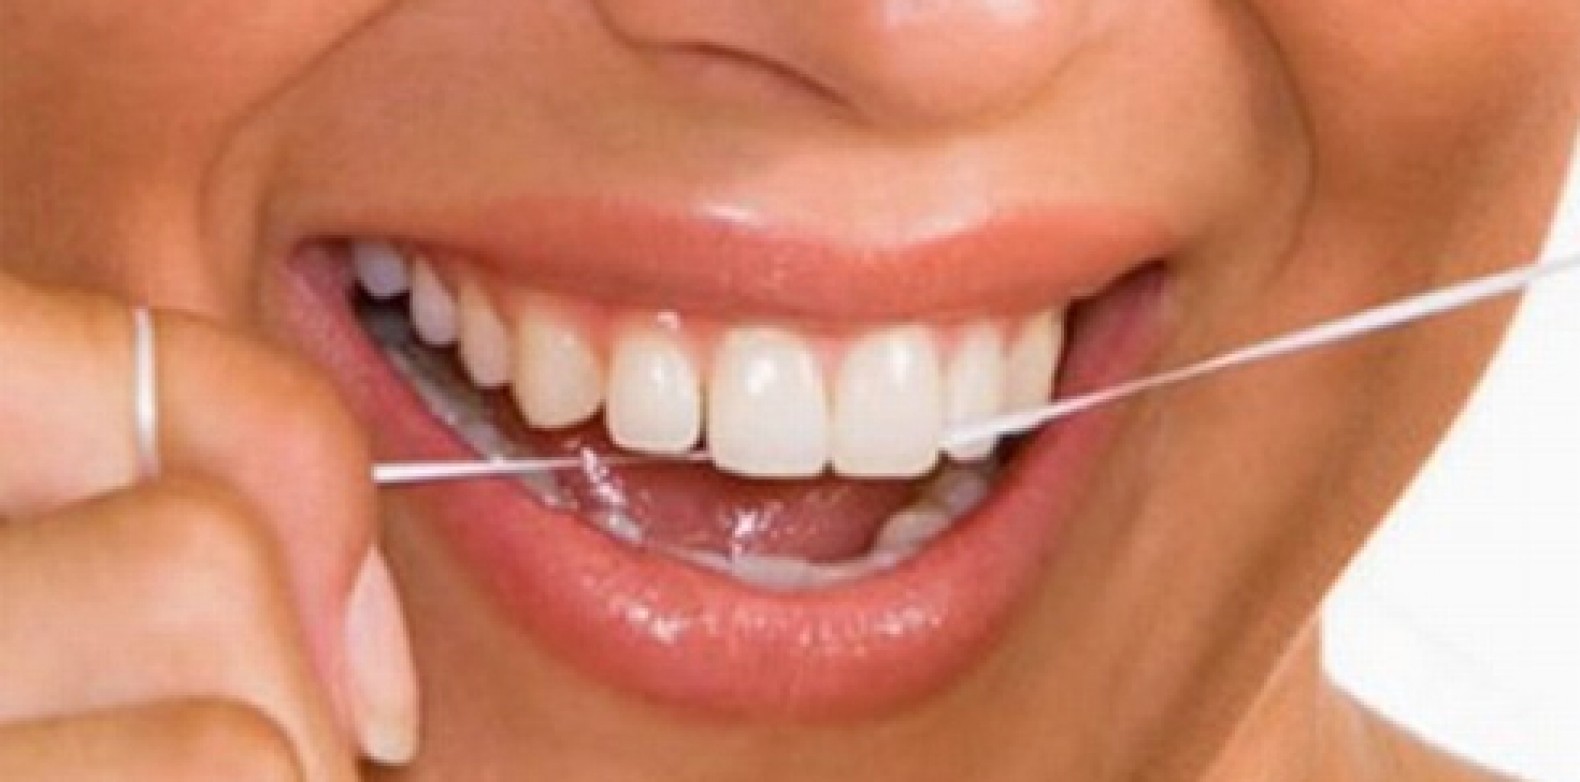 Uso correto do fio dental previne doenças bucais